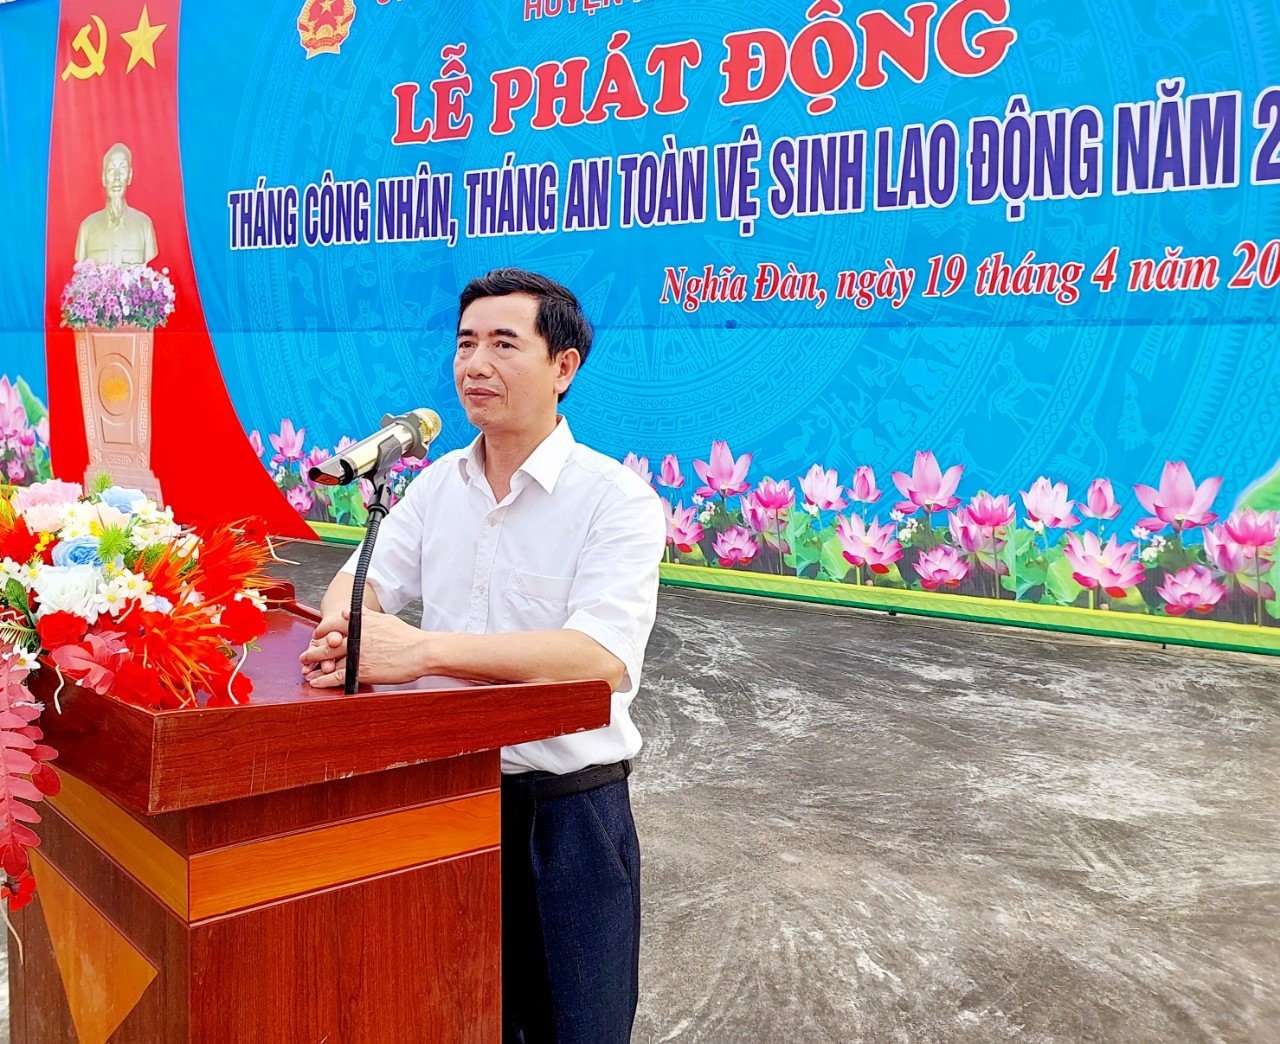 Ông Phan Tiến Hải - Phó Bí thư Thường trực Huyện ủy Nghĩa Đàn phát biểu tại buổi lễ. Ảnh: Quỳnh Trang